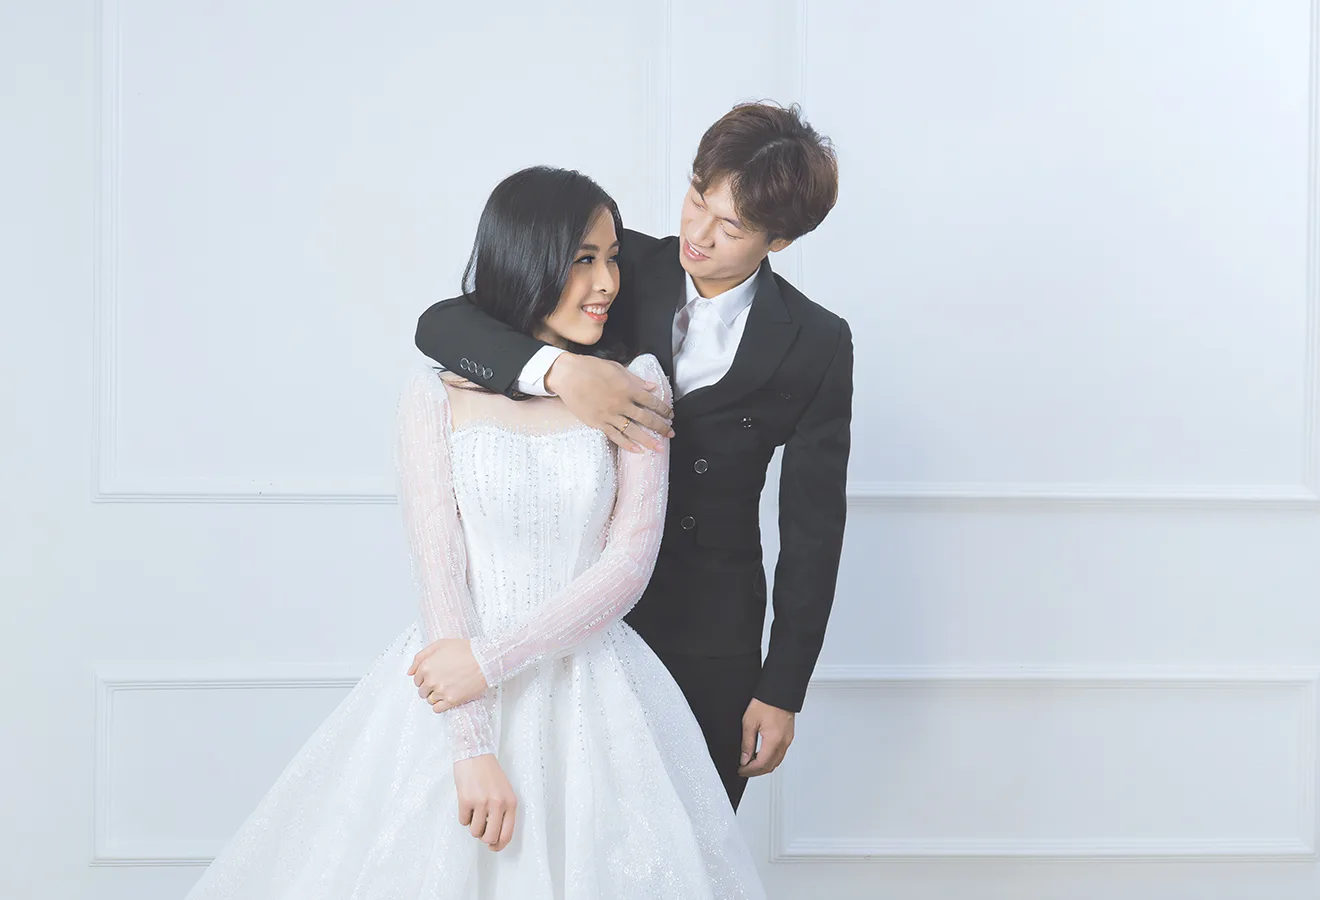 Chọn tone áo cưới trắng nhẹ nhàng cho hình cưới kiểu Hàn